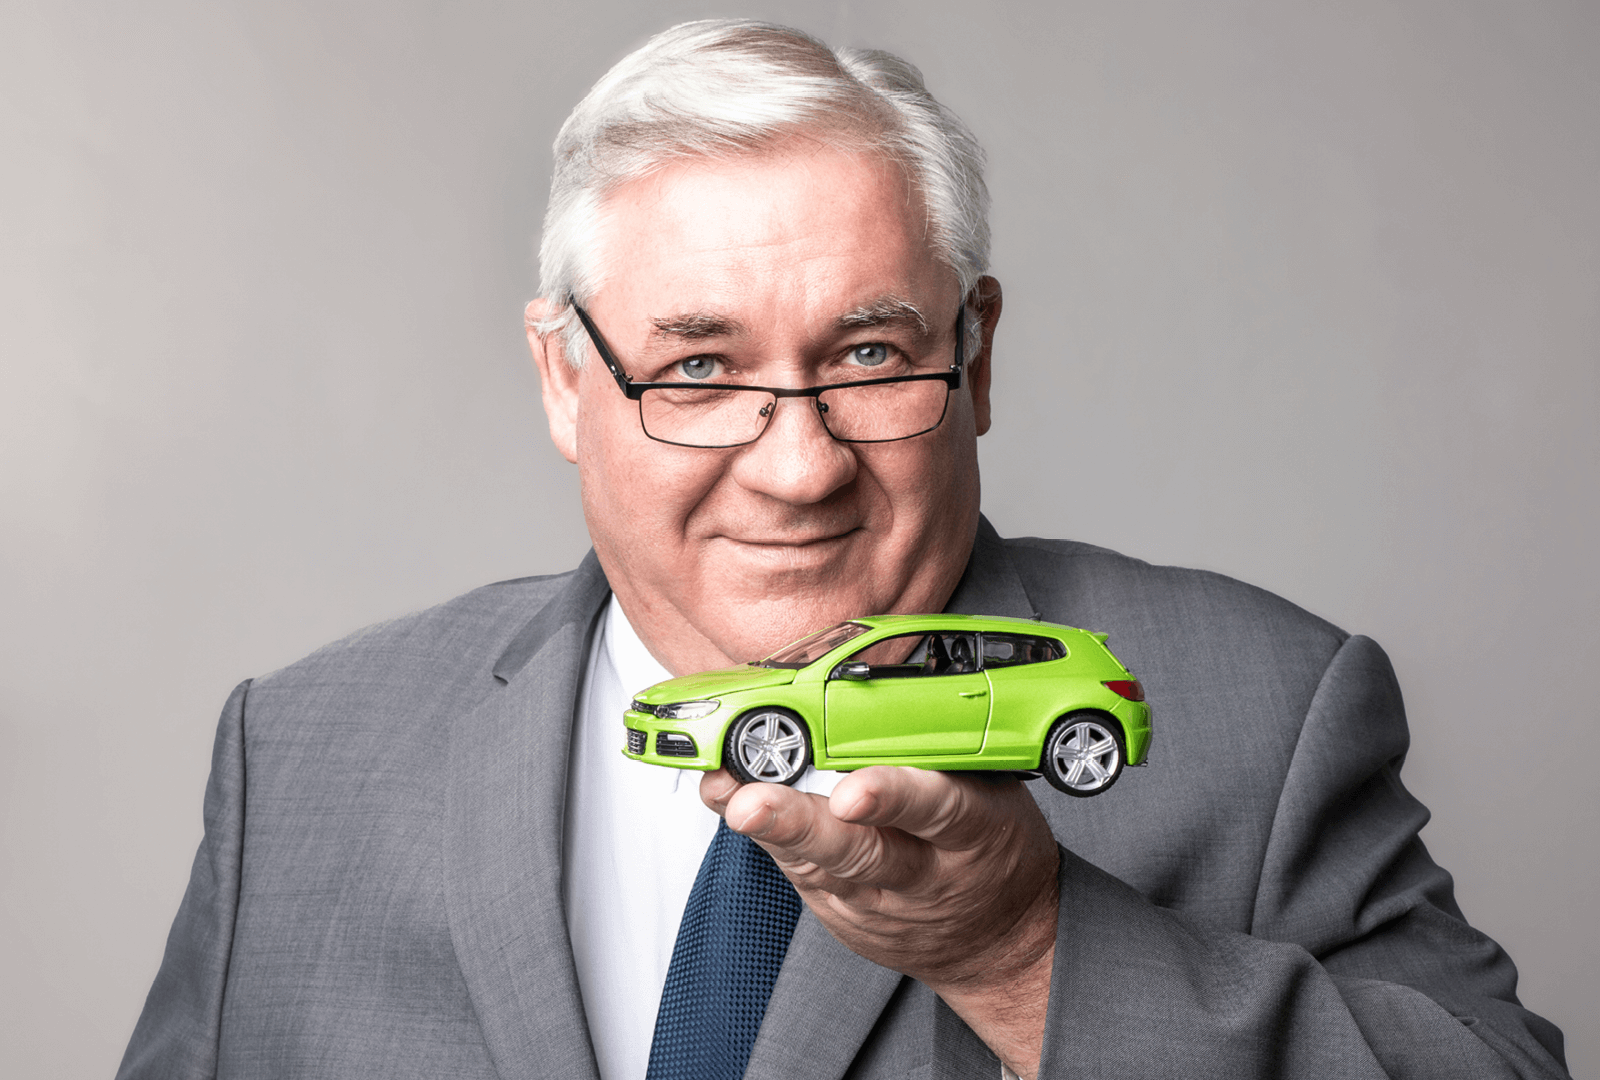 Directeur commercial de la marque Carpole Occasions tenant une voiture verte dans sa main